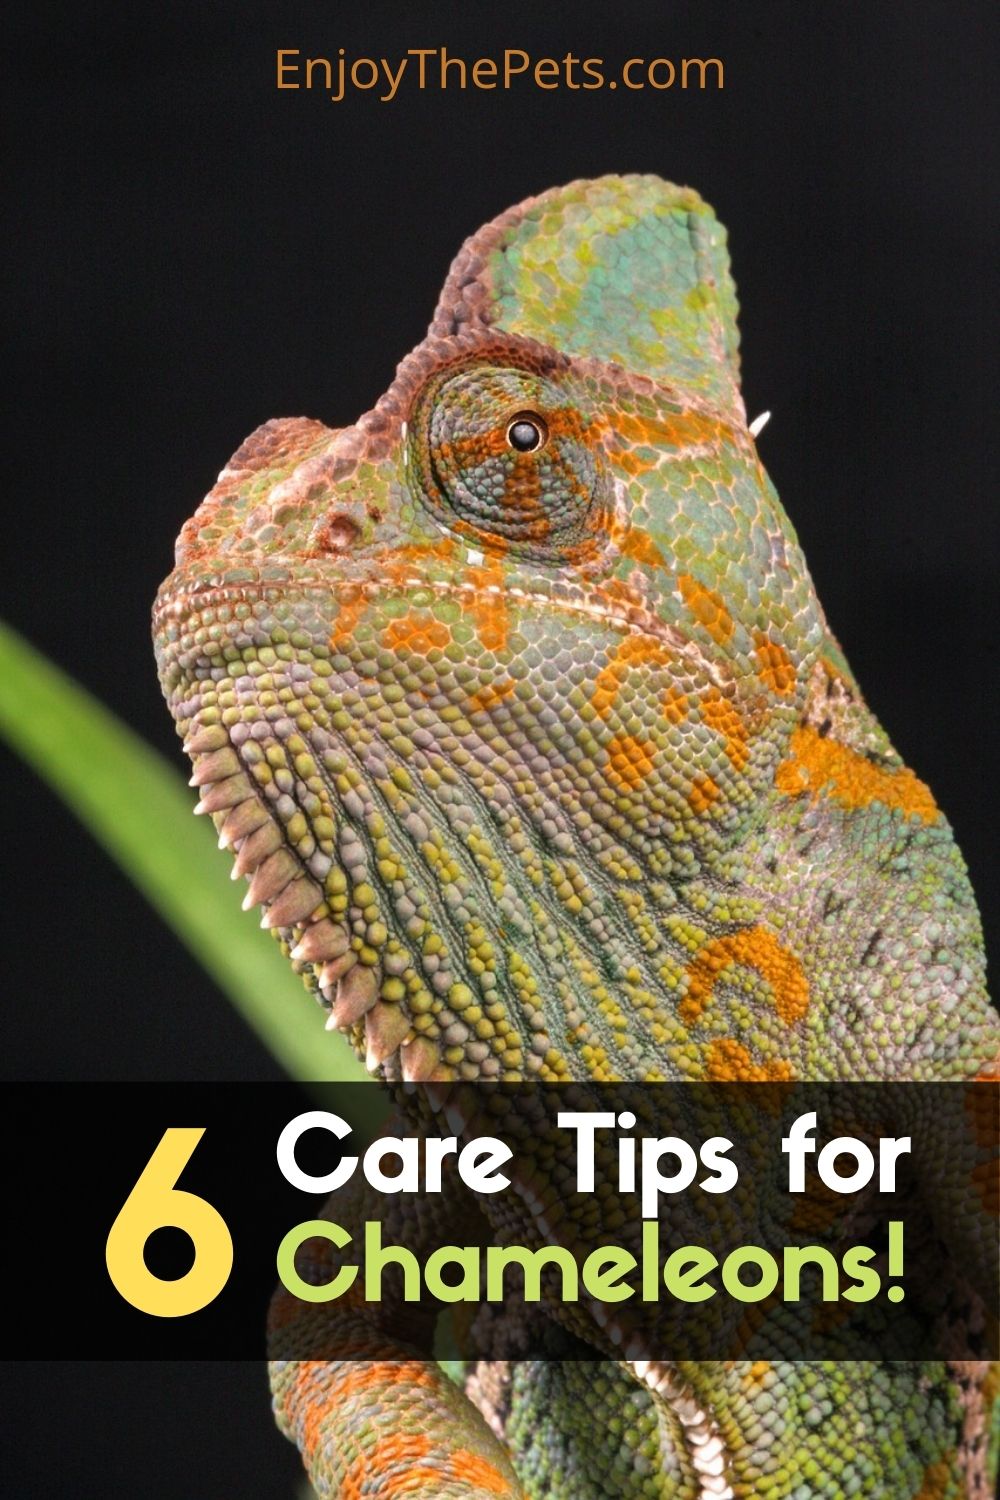 Care Tips for Chameleons